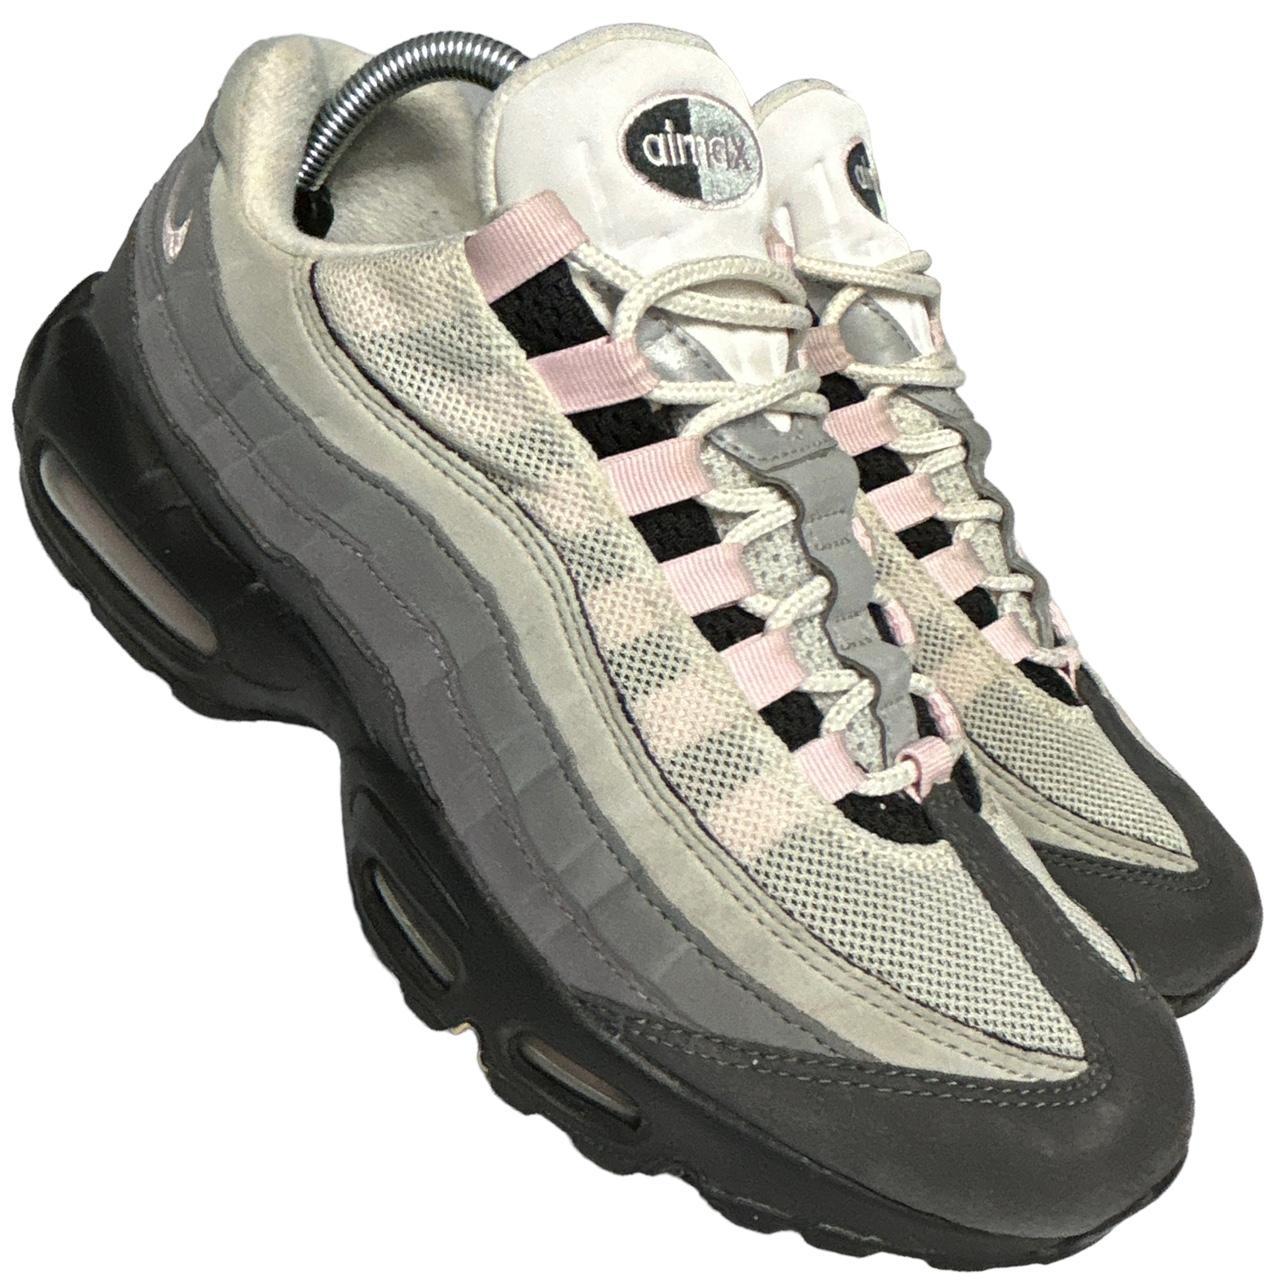 Nike Pink Foams 95s (UK 8)